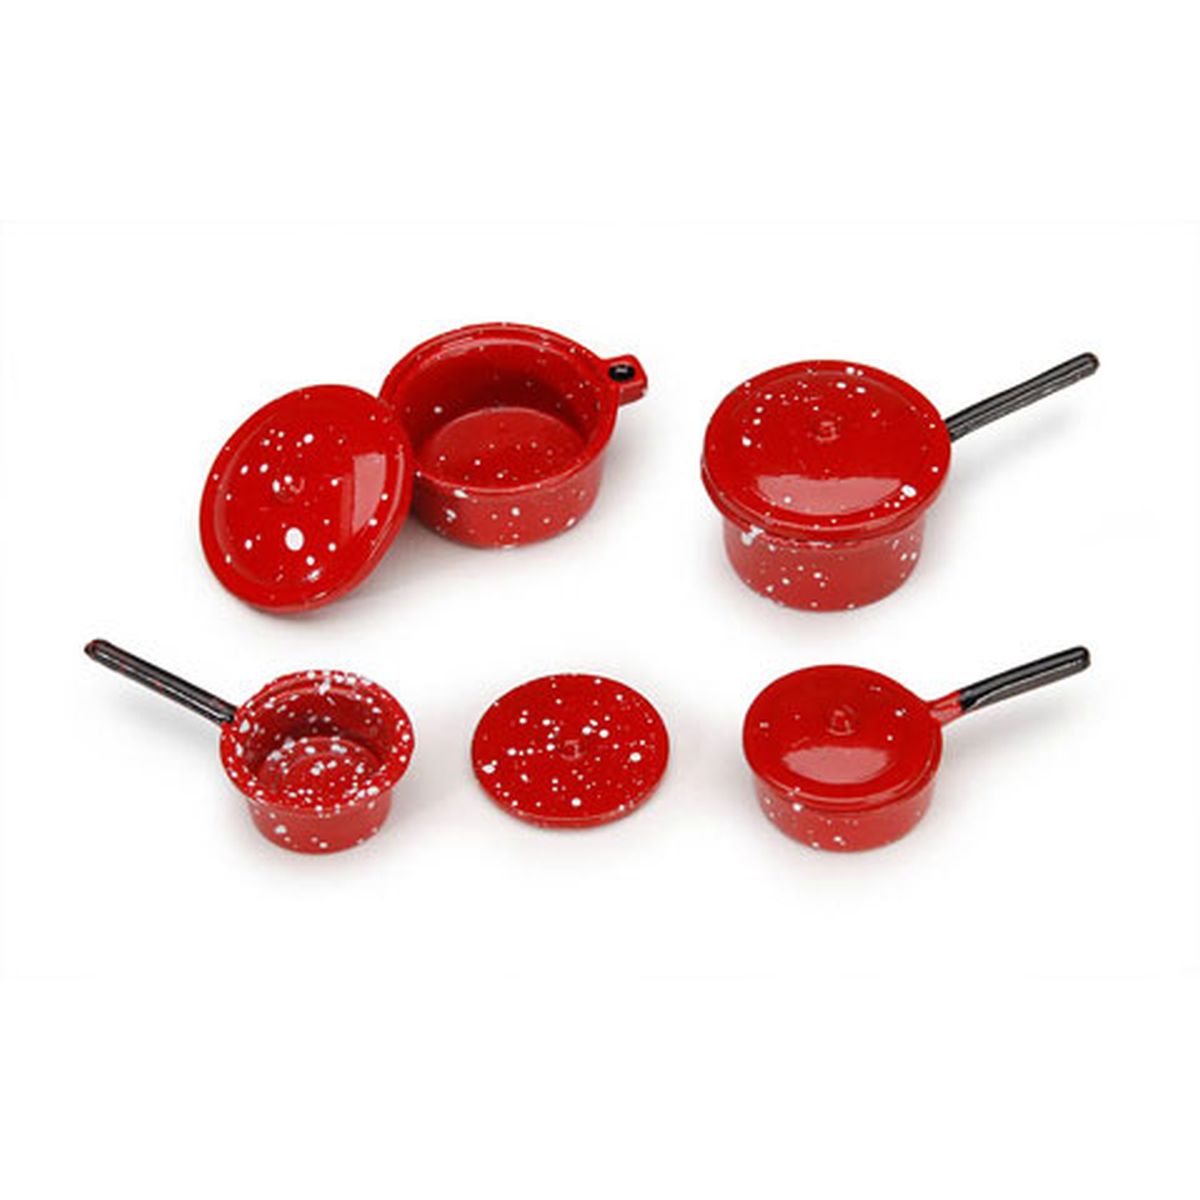 Set of Red Graniteware or Speckleware Pots